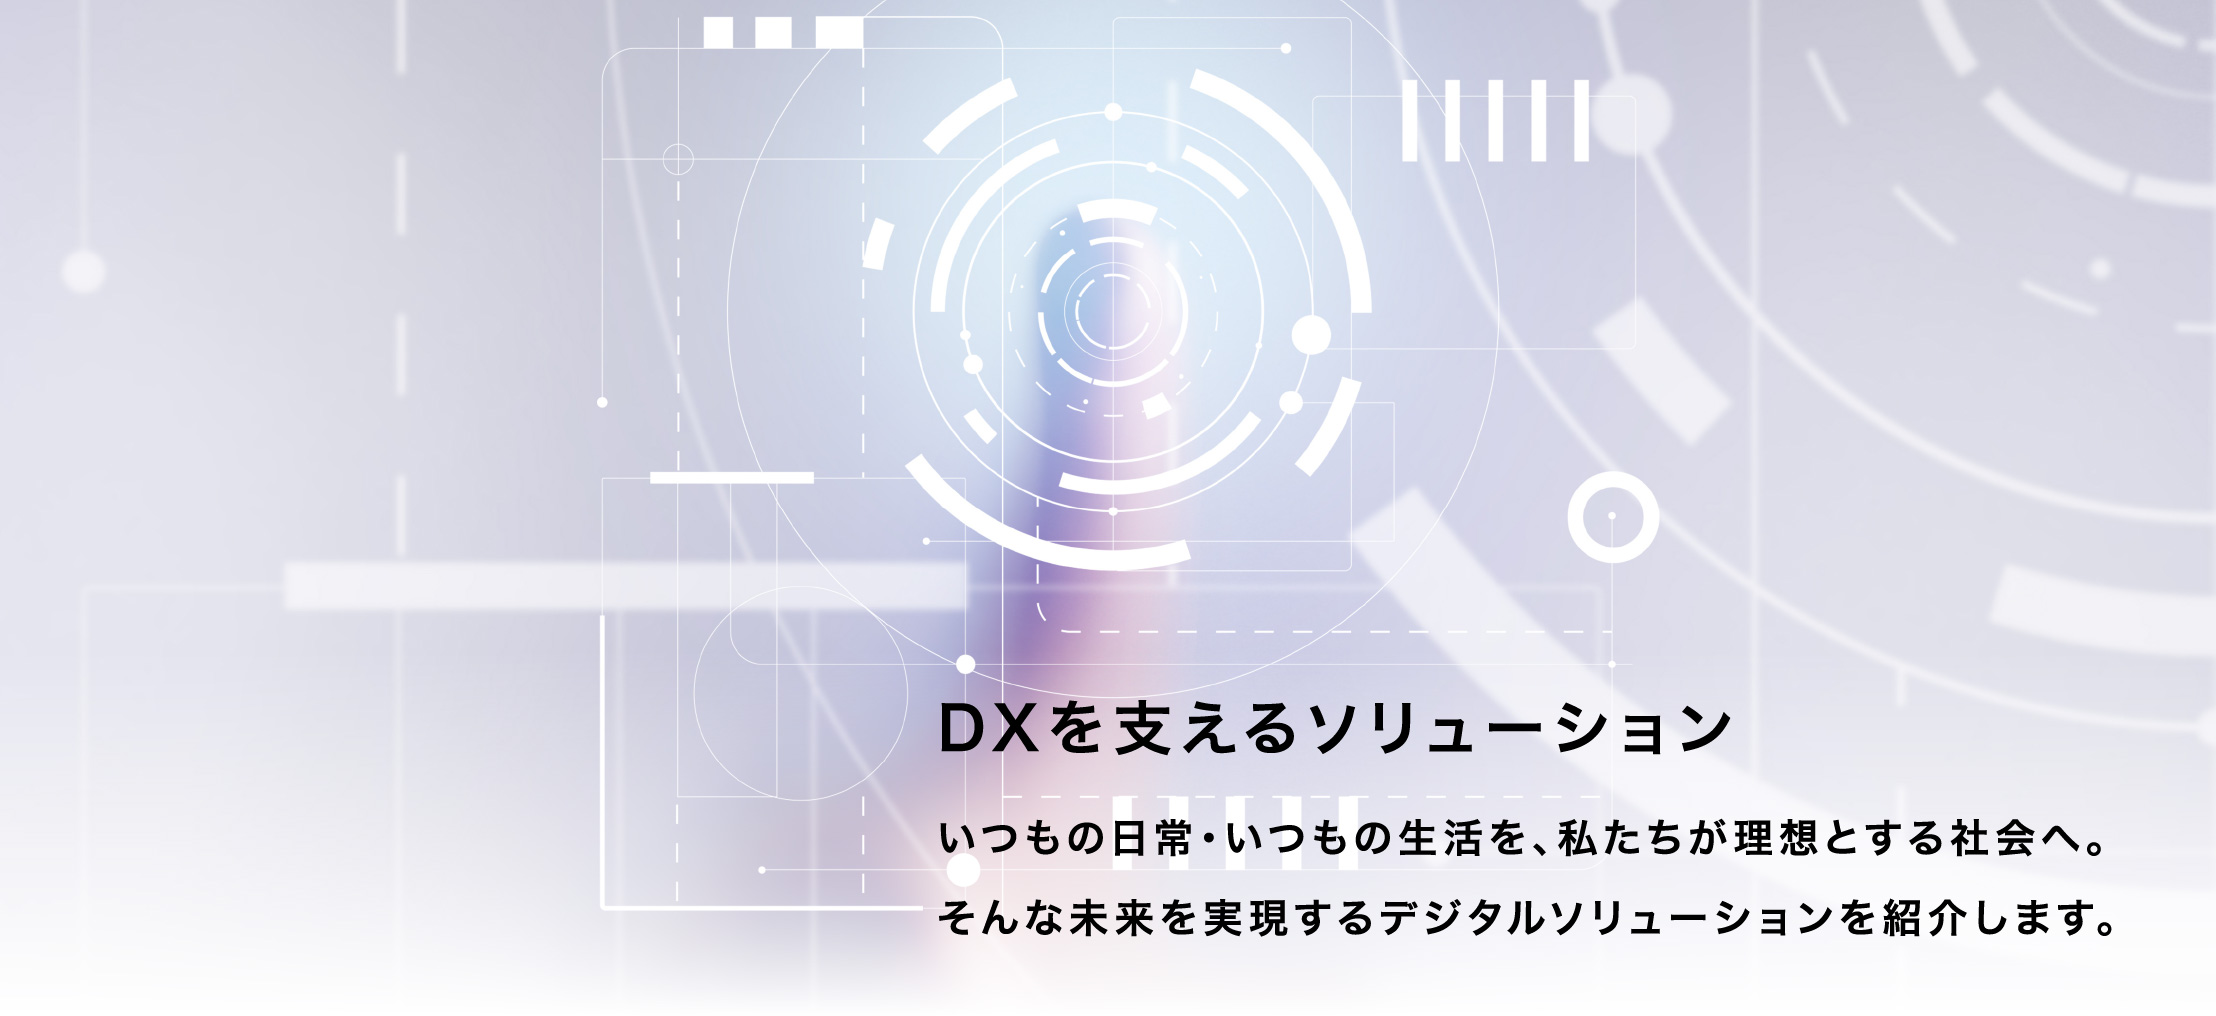 DXを支えるソリューション いつもの日常・いつもの生活を、私たちが理想とする社会へ。そんな未来を実現するデジタルソリューションを紹介します。